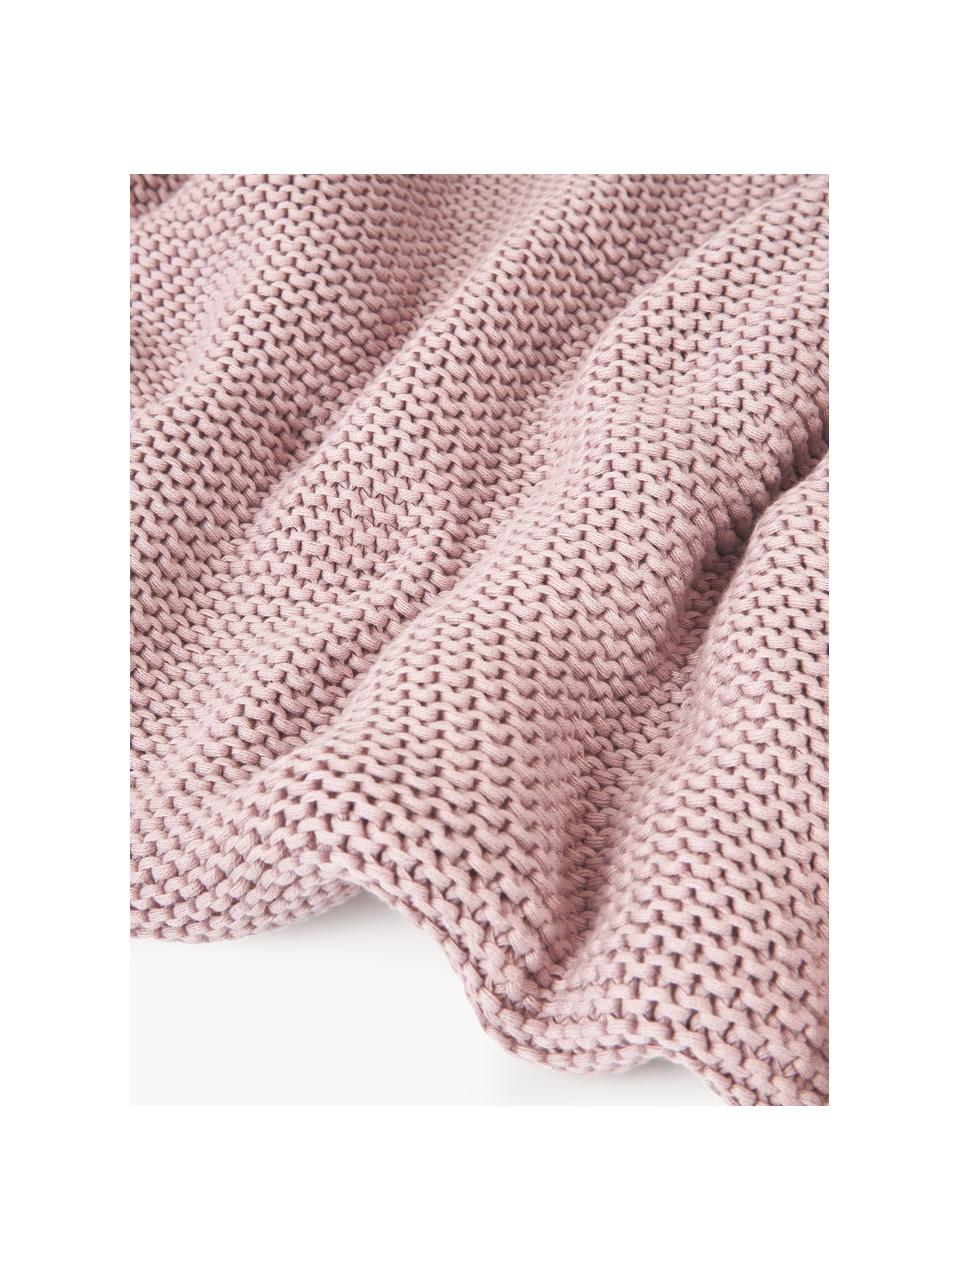 Coperta a maglia in cotone organico Adalyn, 100% cotone organico certificato GOTS, Rosa chiaro, Larg. 150 x Lung. 200 cm